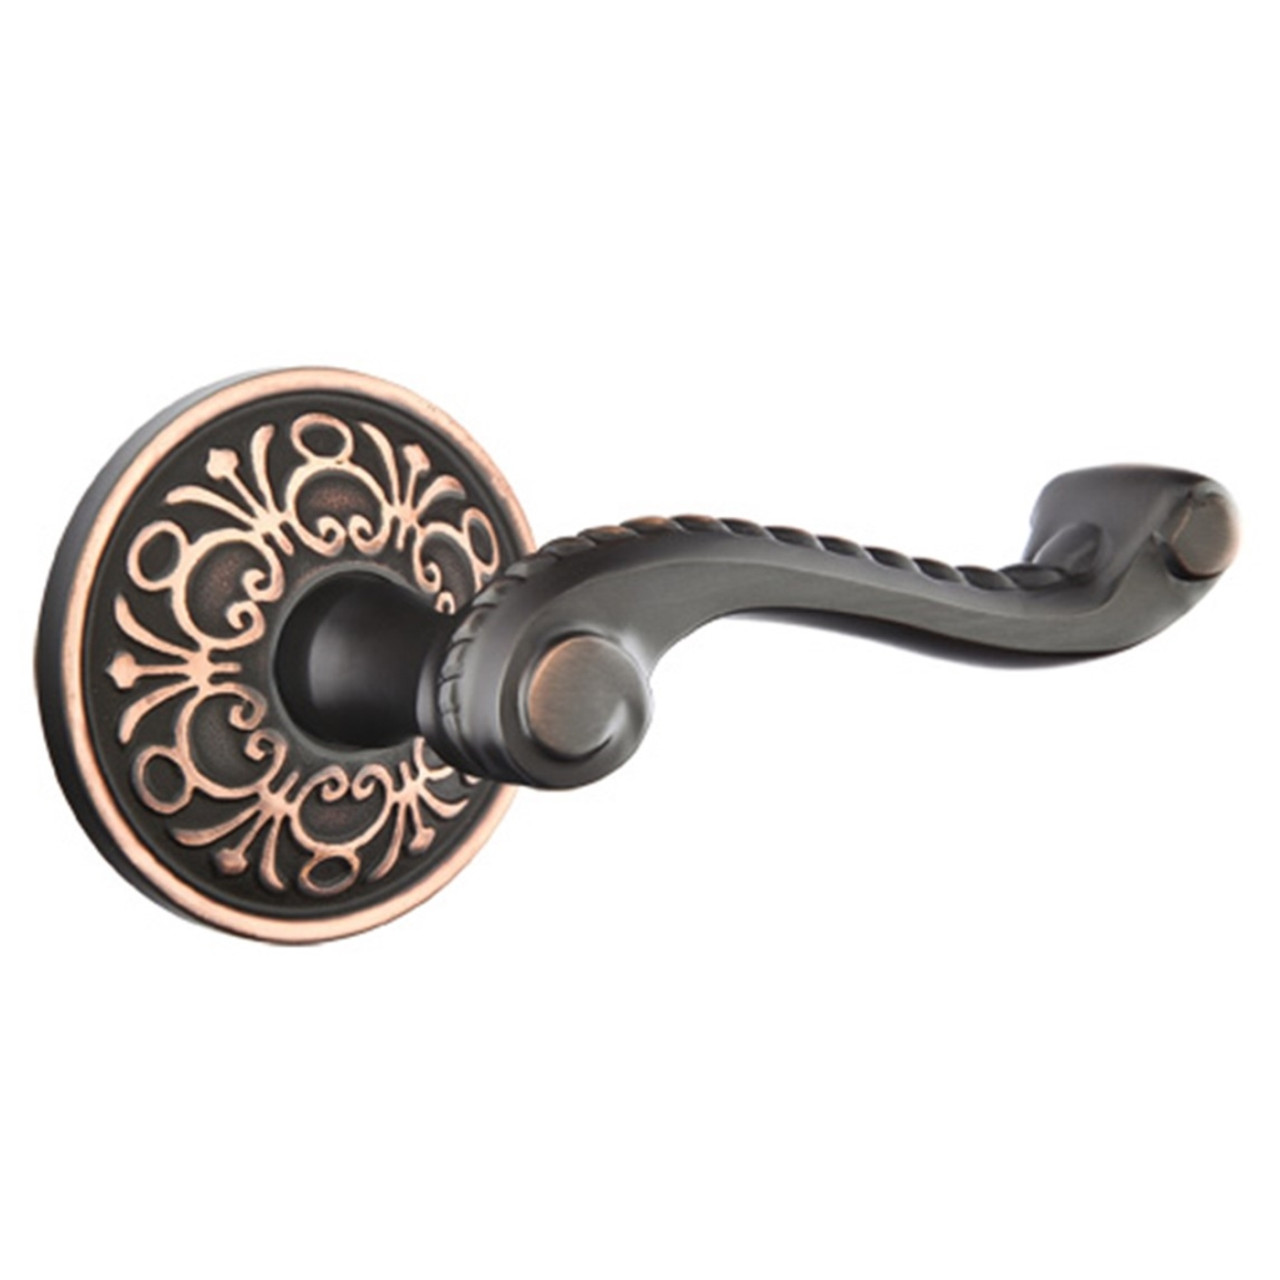 Two Vintage Doorknob Photo Holder - Rose